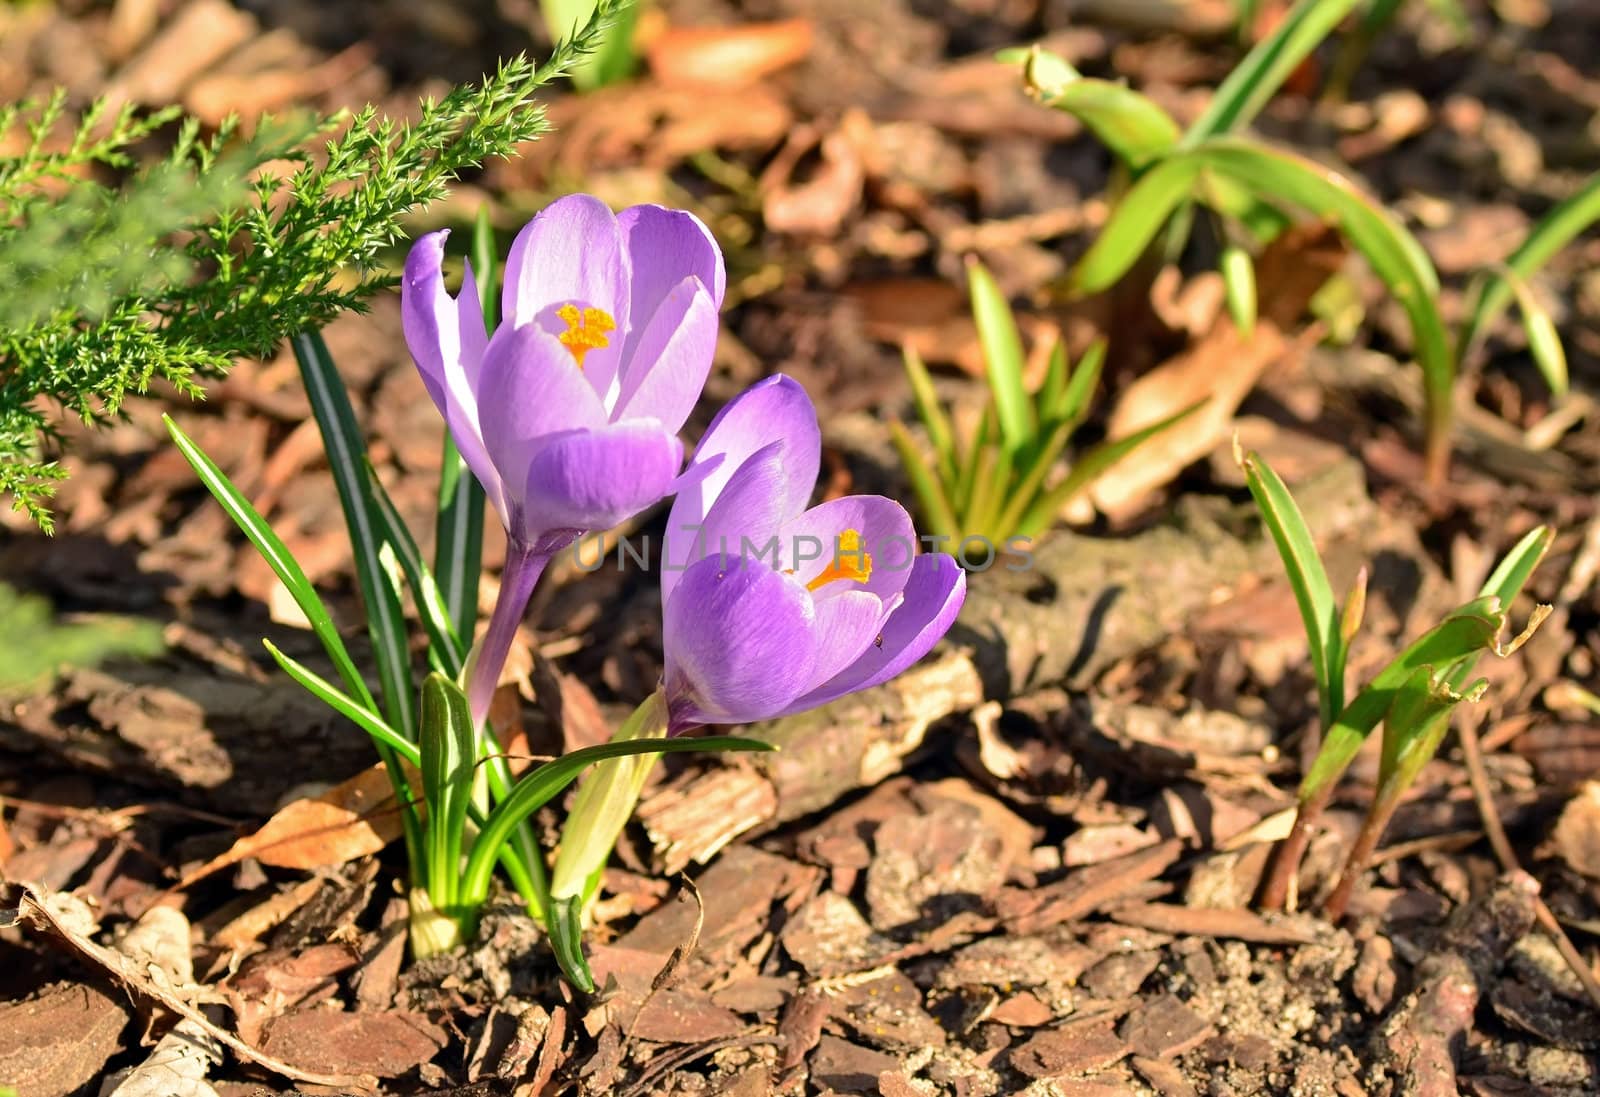 Blooming crocus flowers in spring time